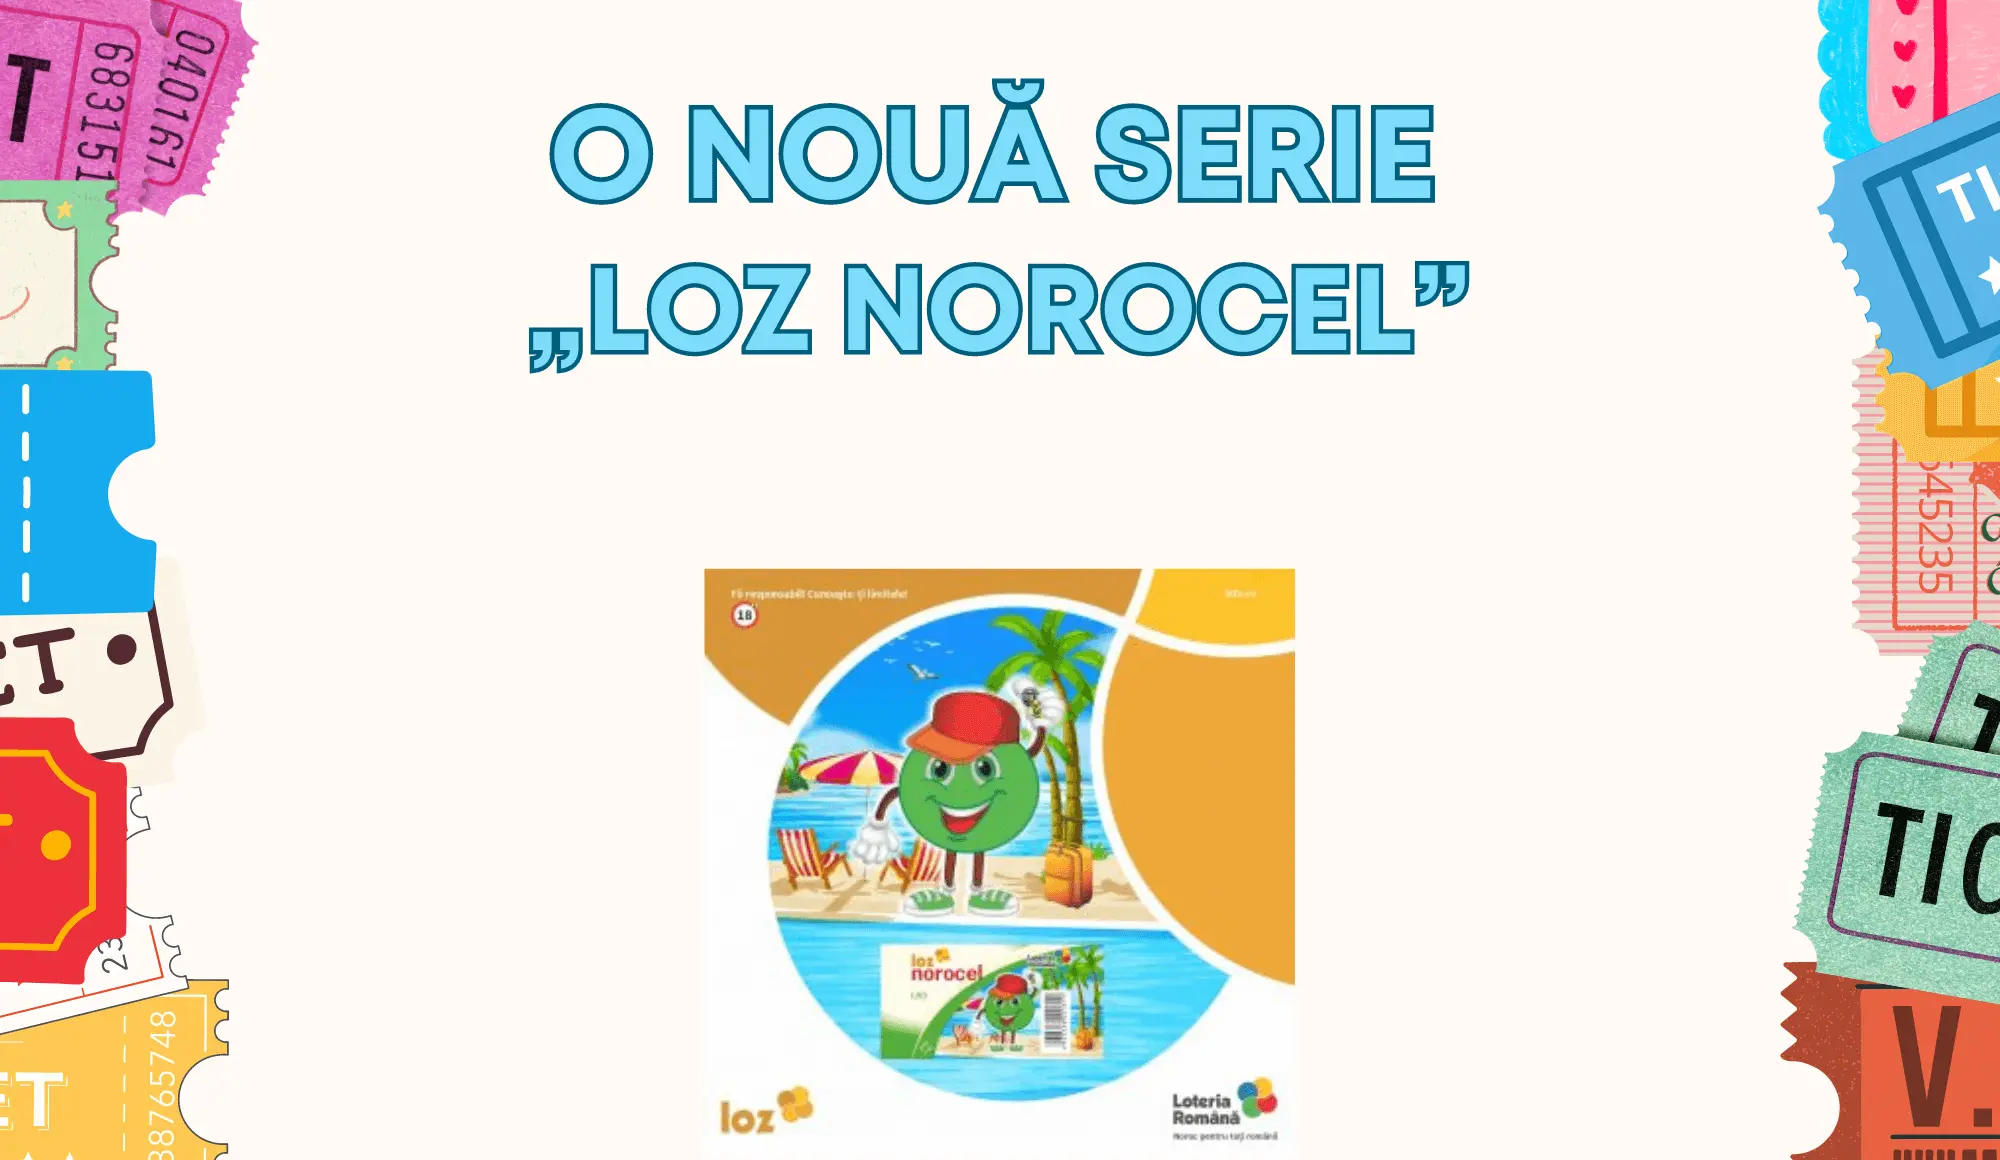 O nouă serie „LOZ NOROCEL” cu premiul cel mare de 100.000 LEI